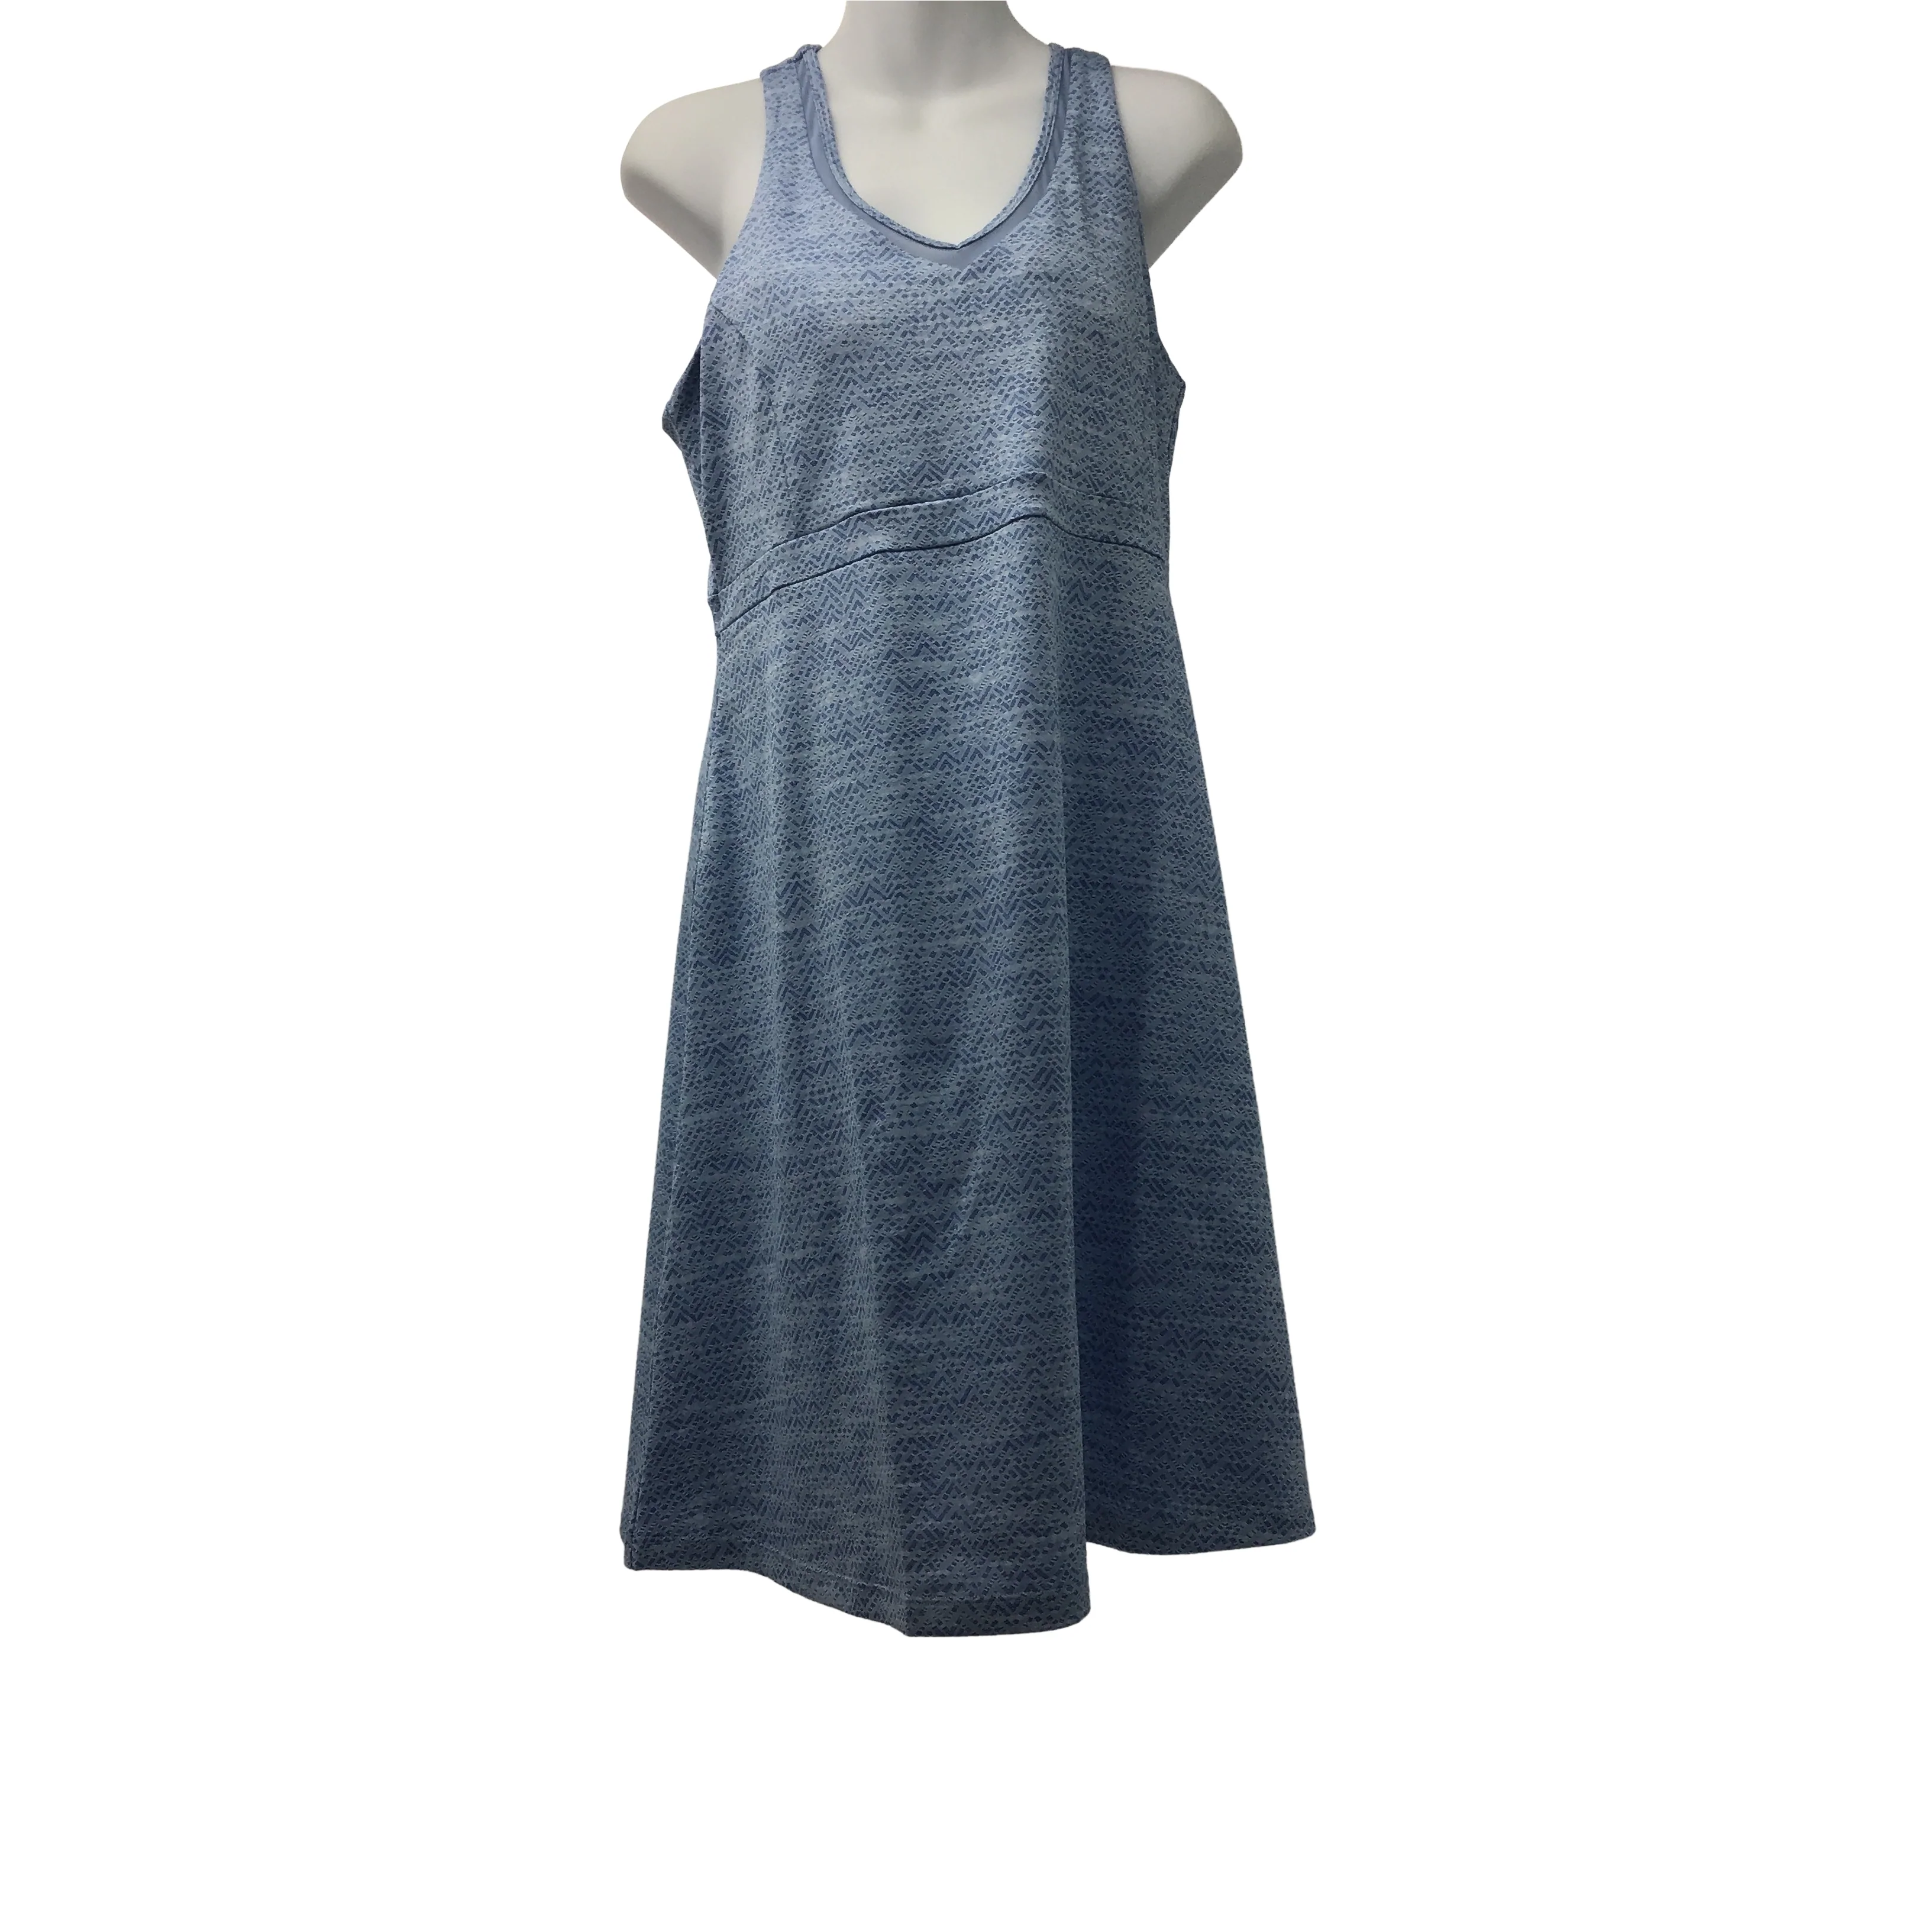 Mondetta: Women's Active Dress / Blue / Size Large